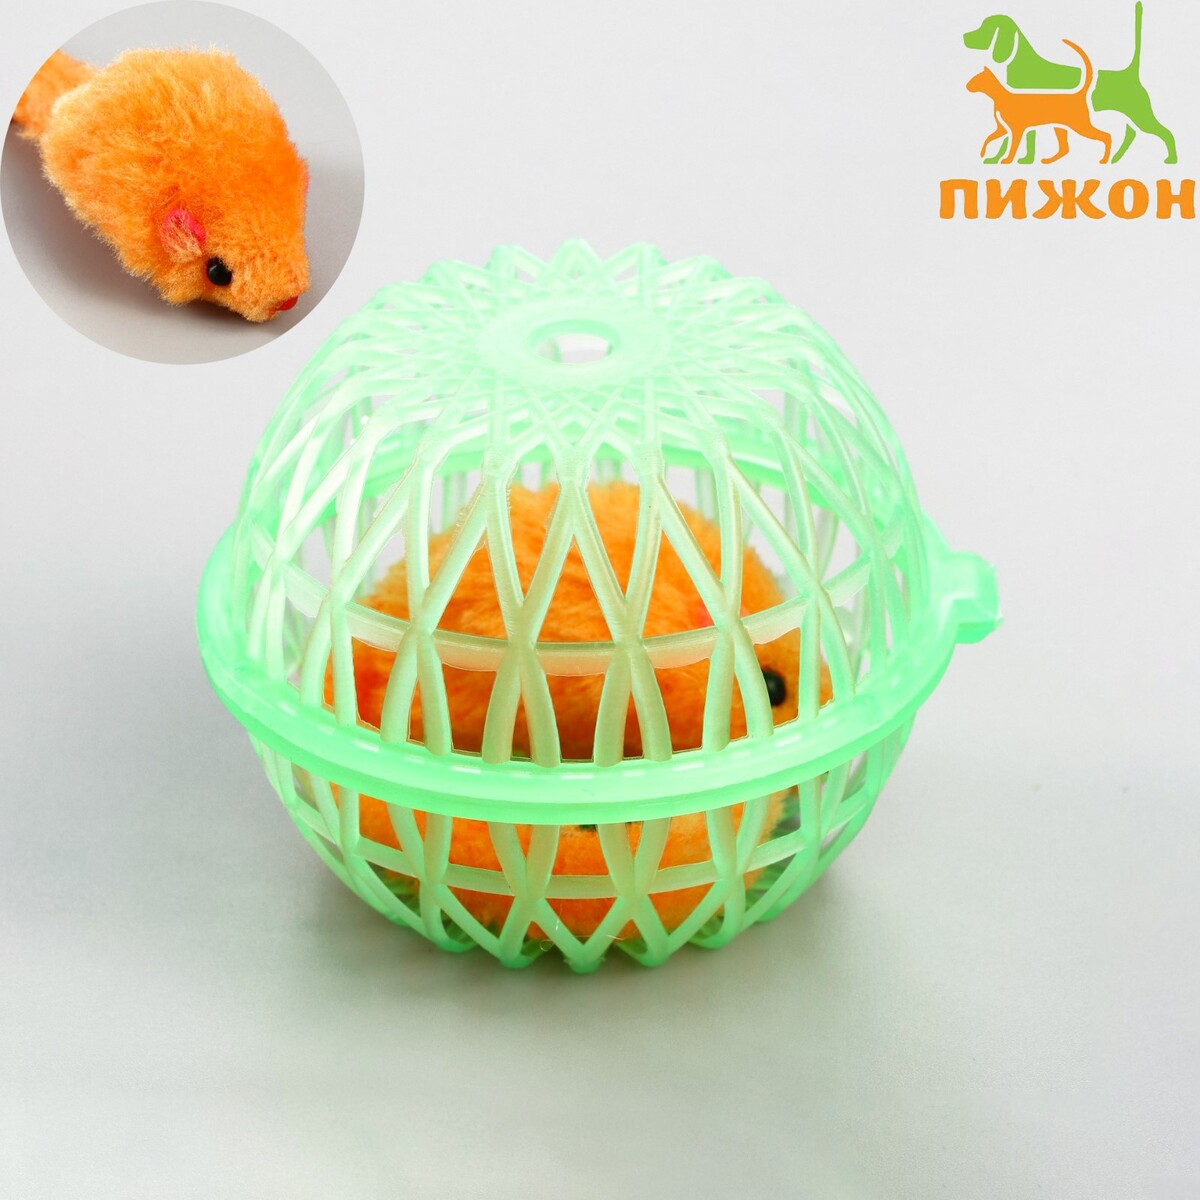 Мышь в пластиковом шаре, 7 х 5 см, зеленый шар/оранжевая мышь мышь погремушка 7 см оранжевая